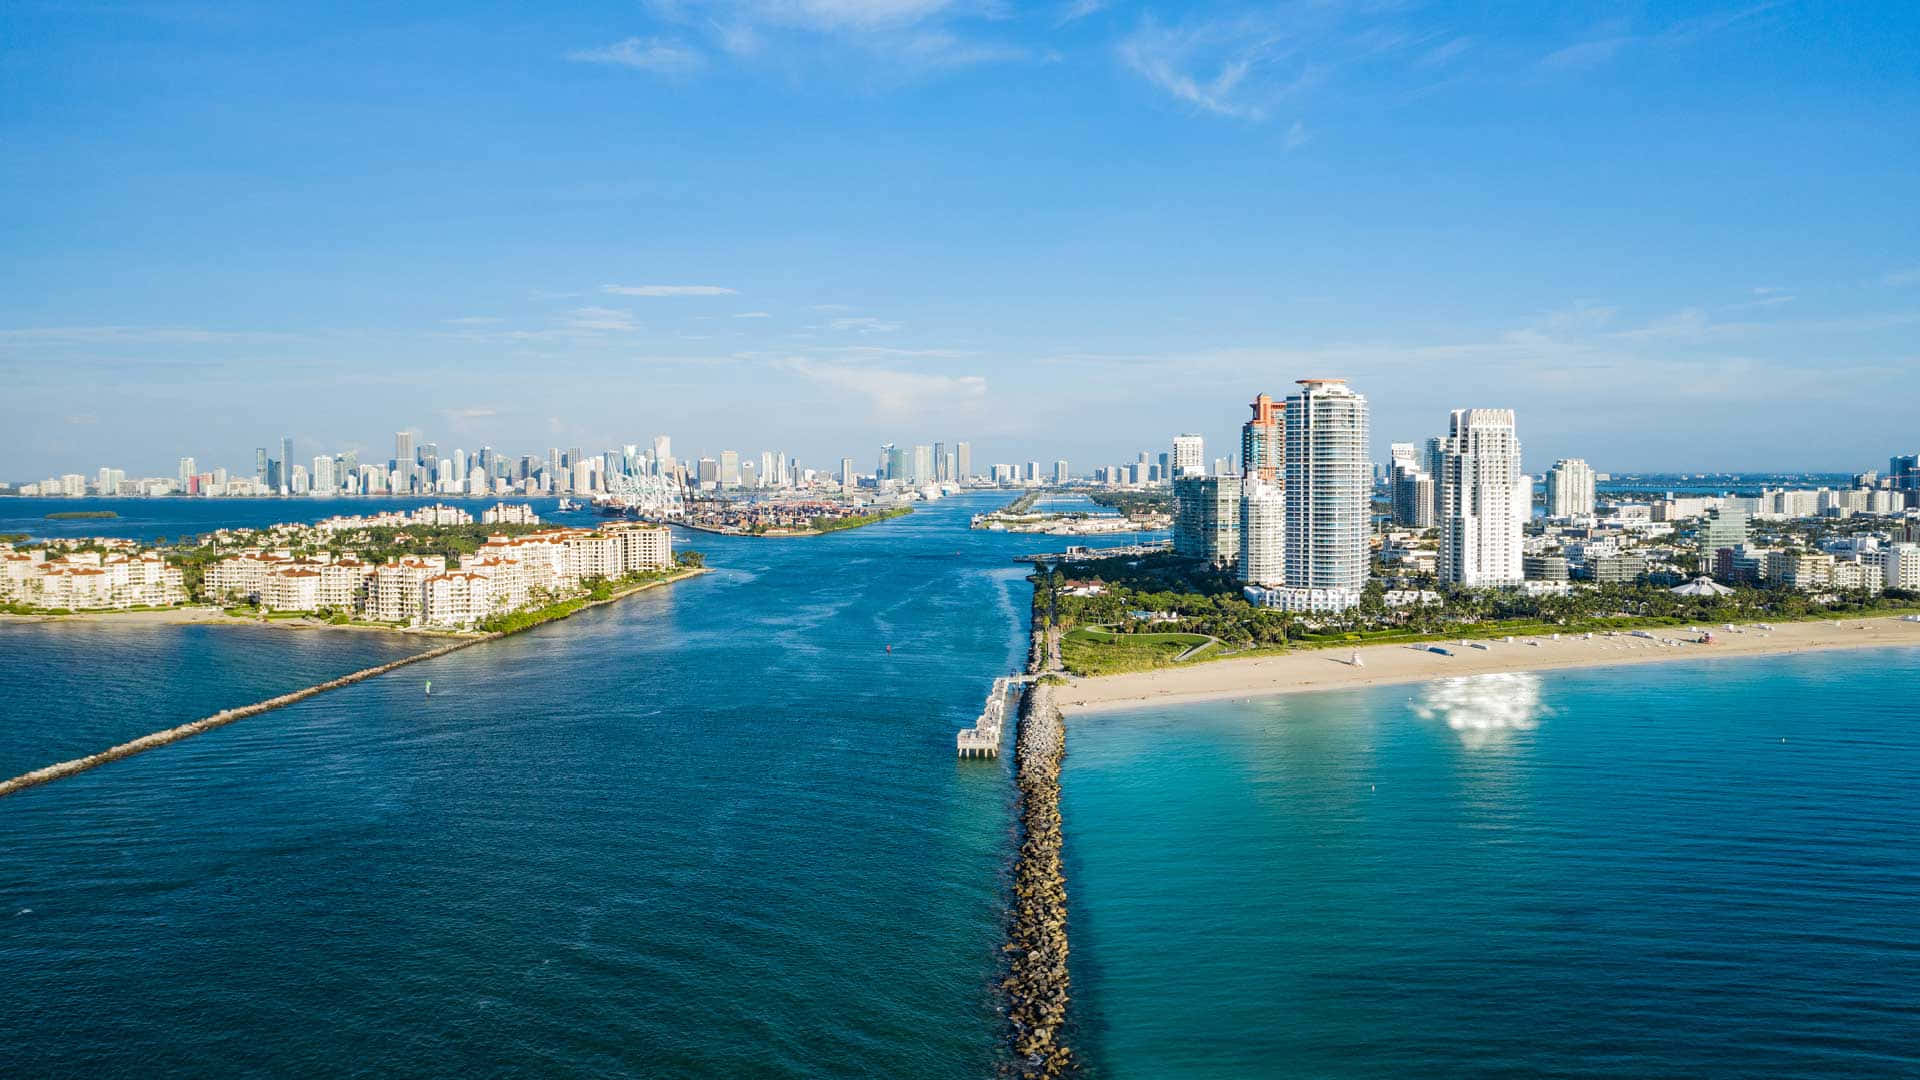 Miamiun Paradiso Tropicale Ti Aspetta